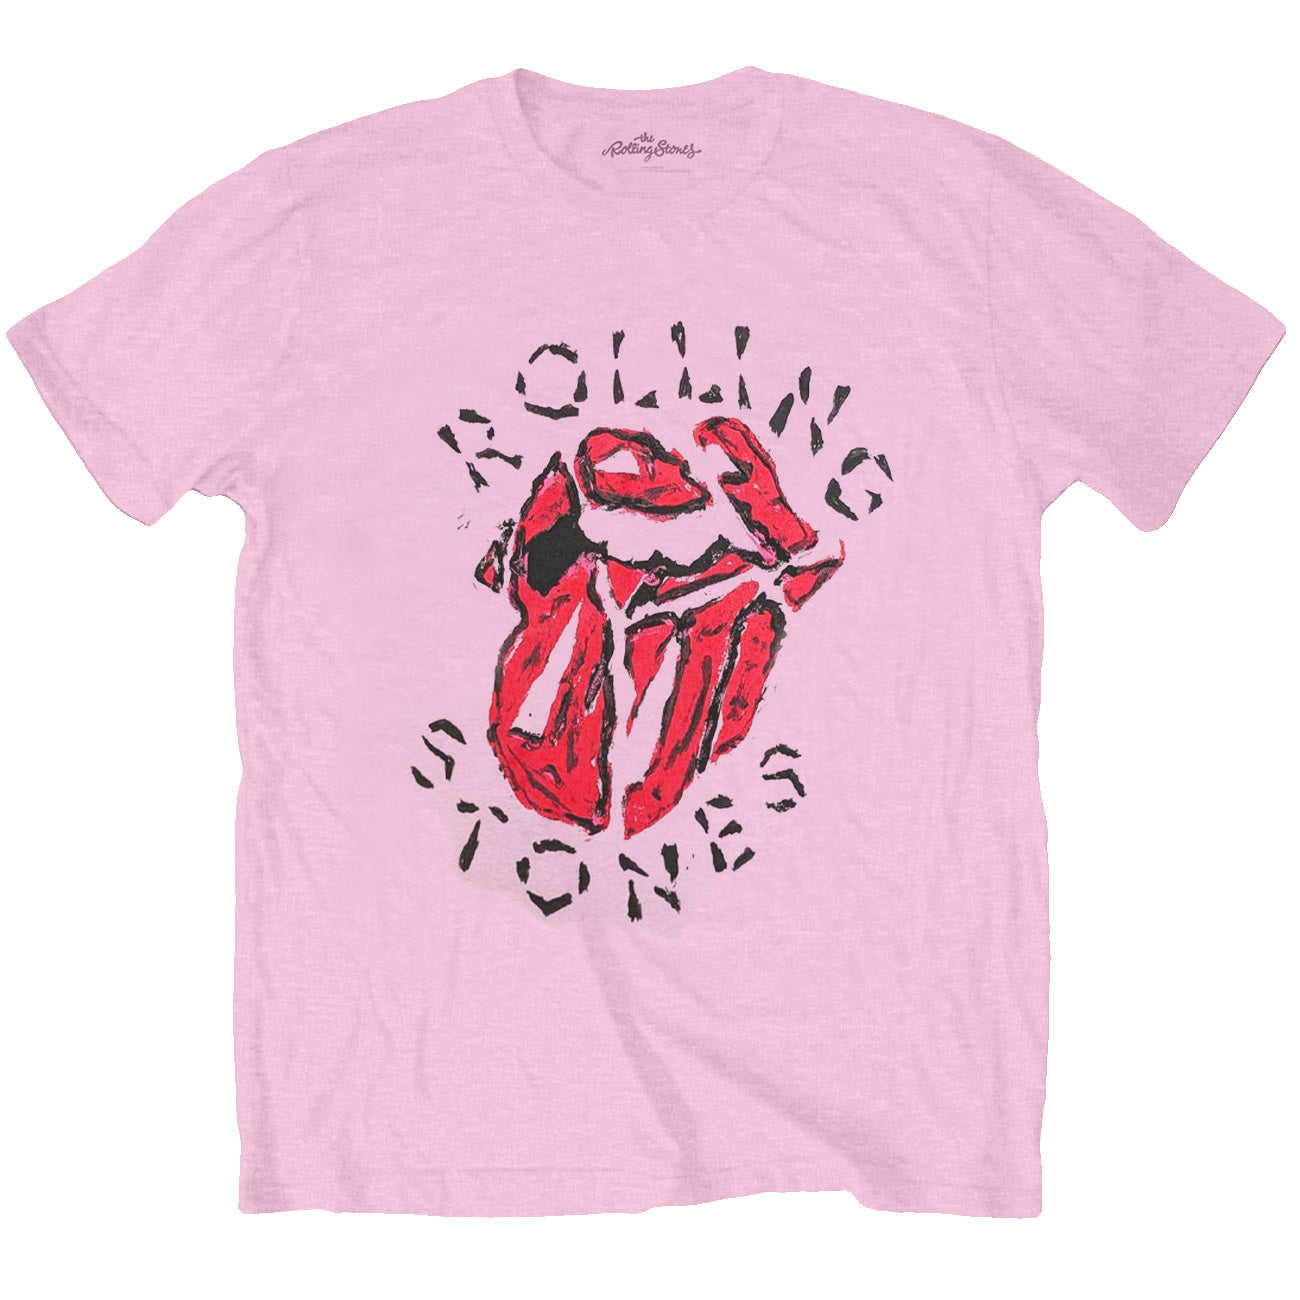 ROLLING STONES ローリングストーンズ (ブライアンジョーンズ追悼55周年 ) - Hackney Diamonds Painted Tongue / Tシャツ / メンズ 【公式 / オフィシャル】